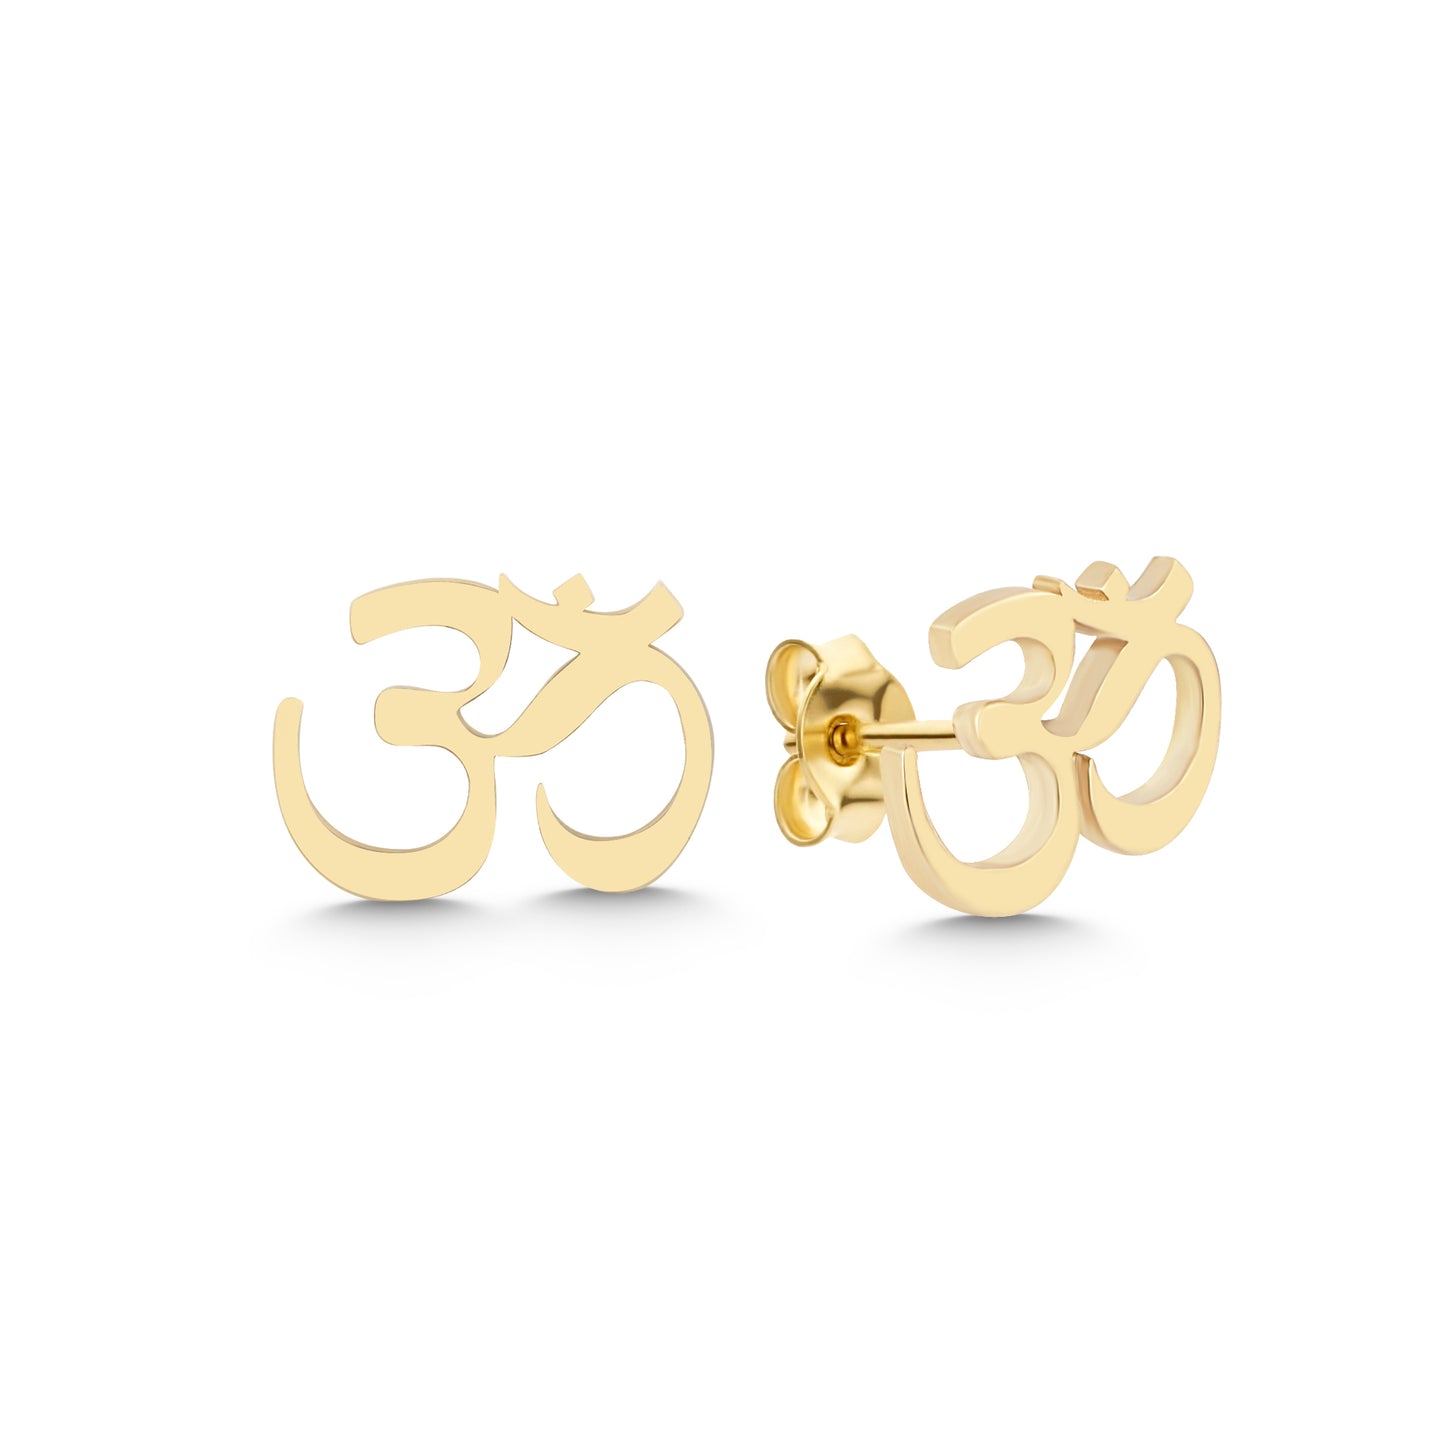 14k gold aum earrings, gold ohm earrings, stacking earrings, handmade earrings, birthday gift, gift for her, celestial earrings